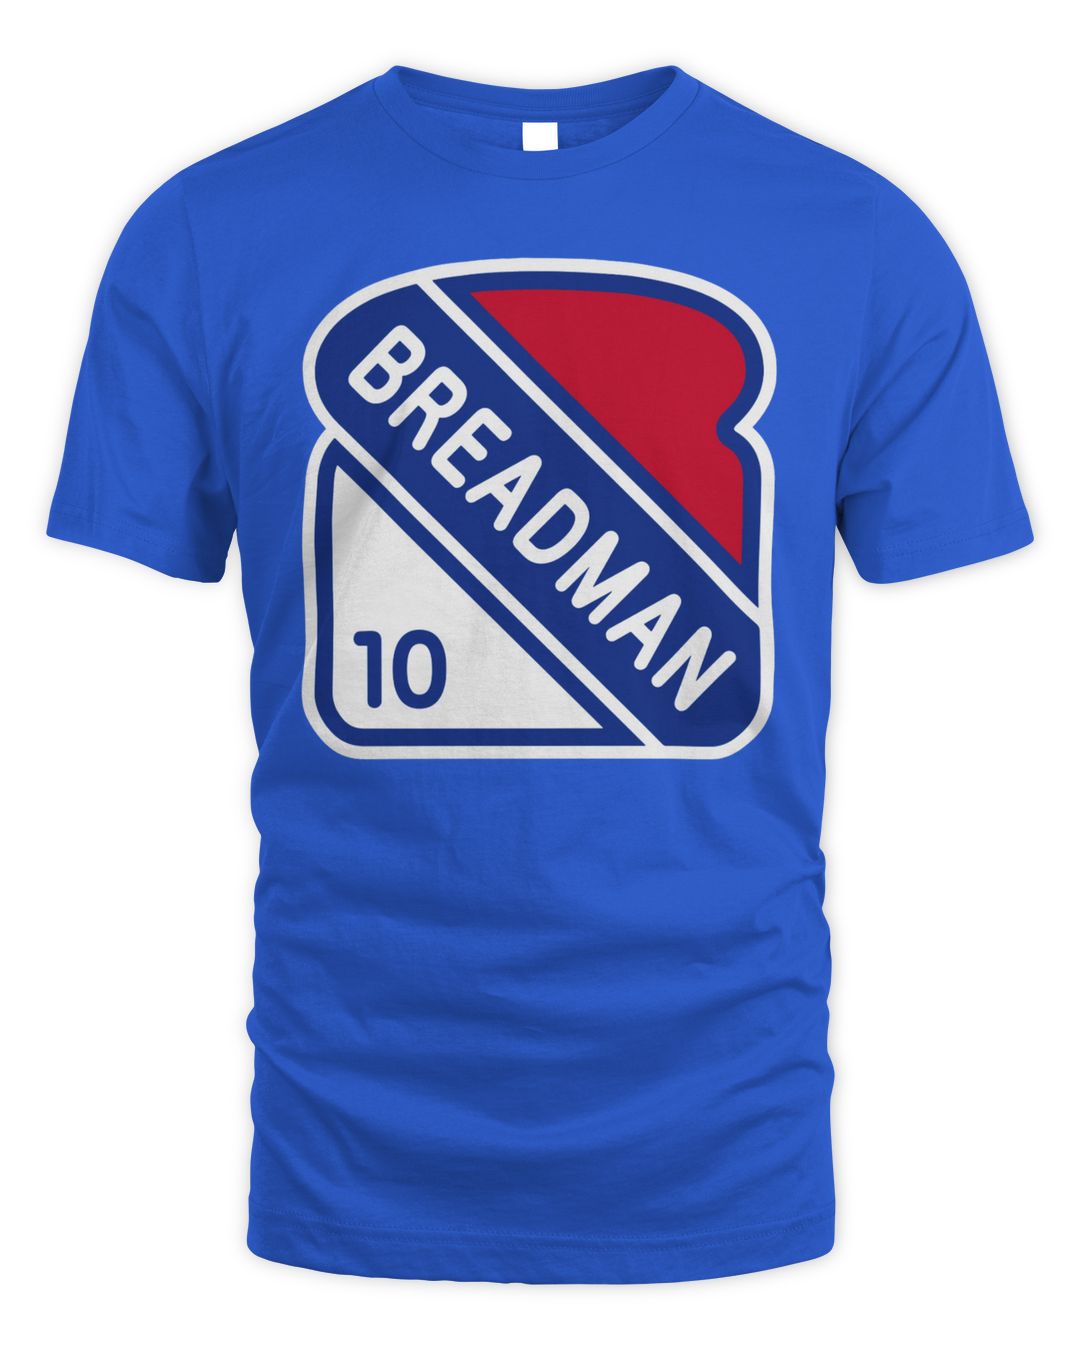 Blue York Merch Breadman Shirt